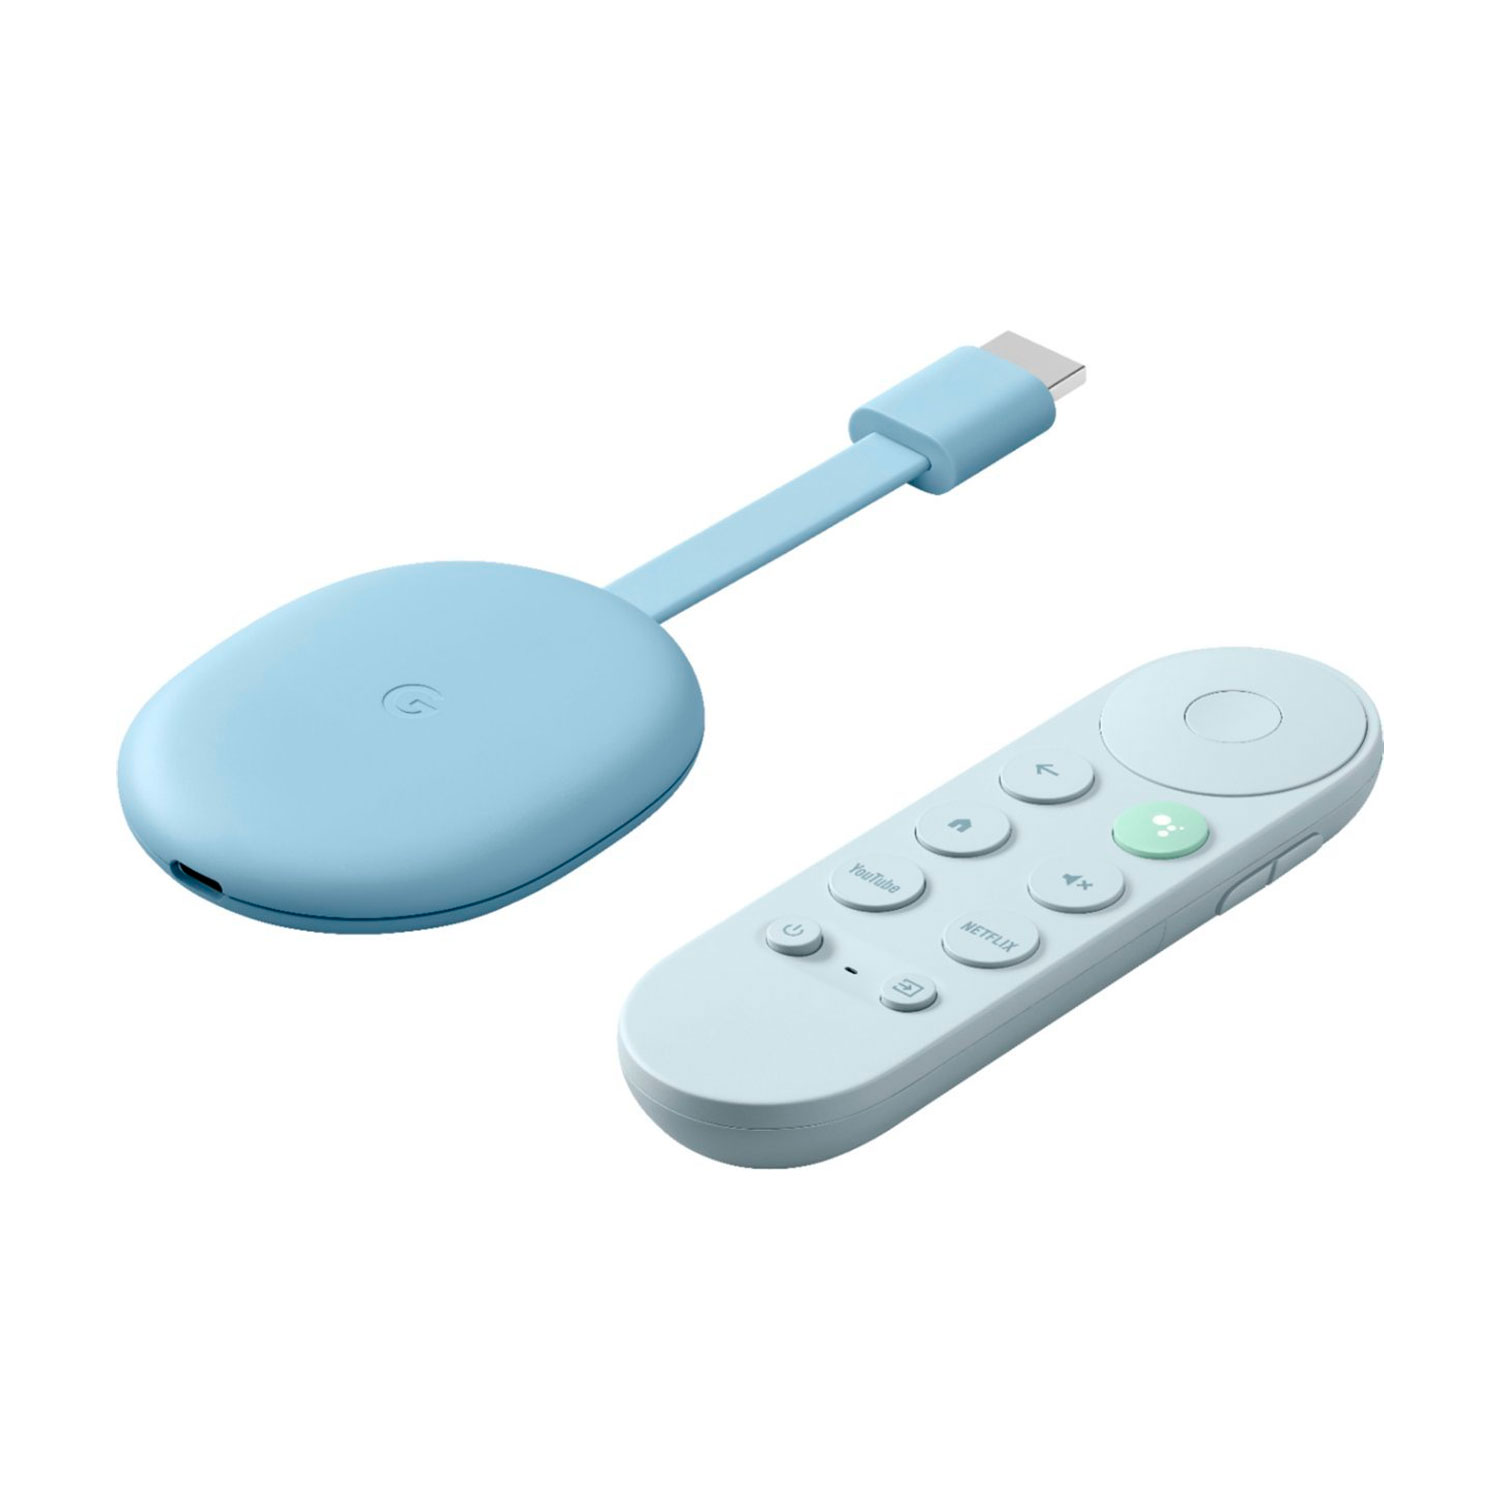 Google Chromecast 4rd Gen com Google TV - Azul (GOOG-GAO1923) (US)
